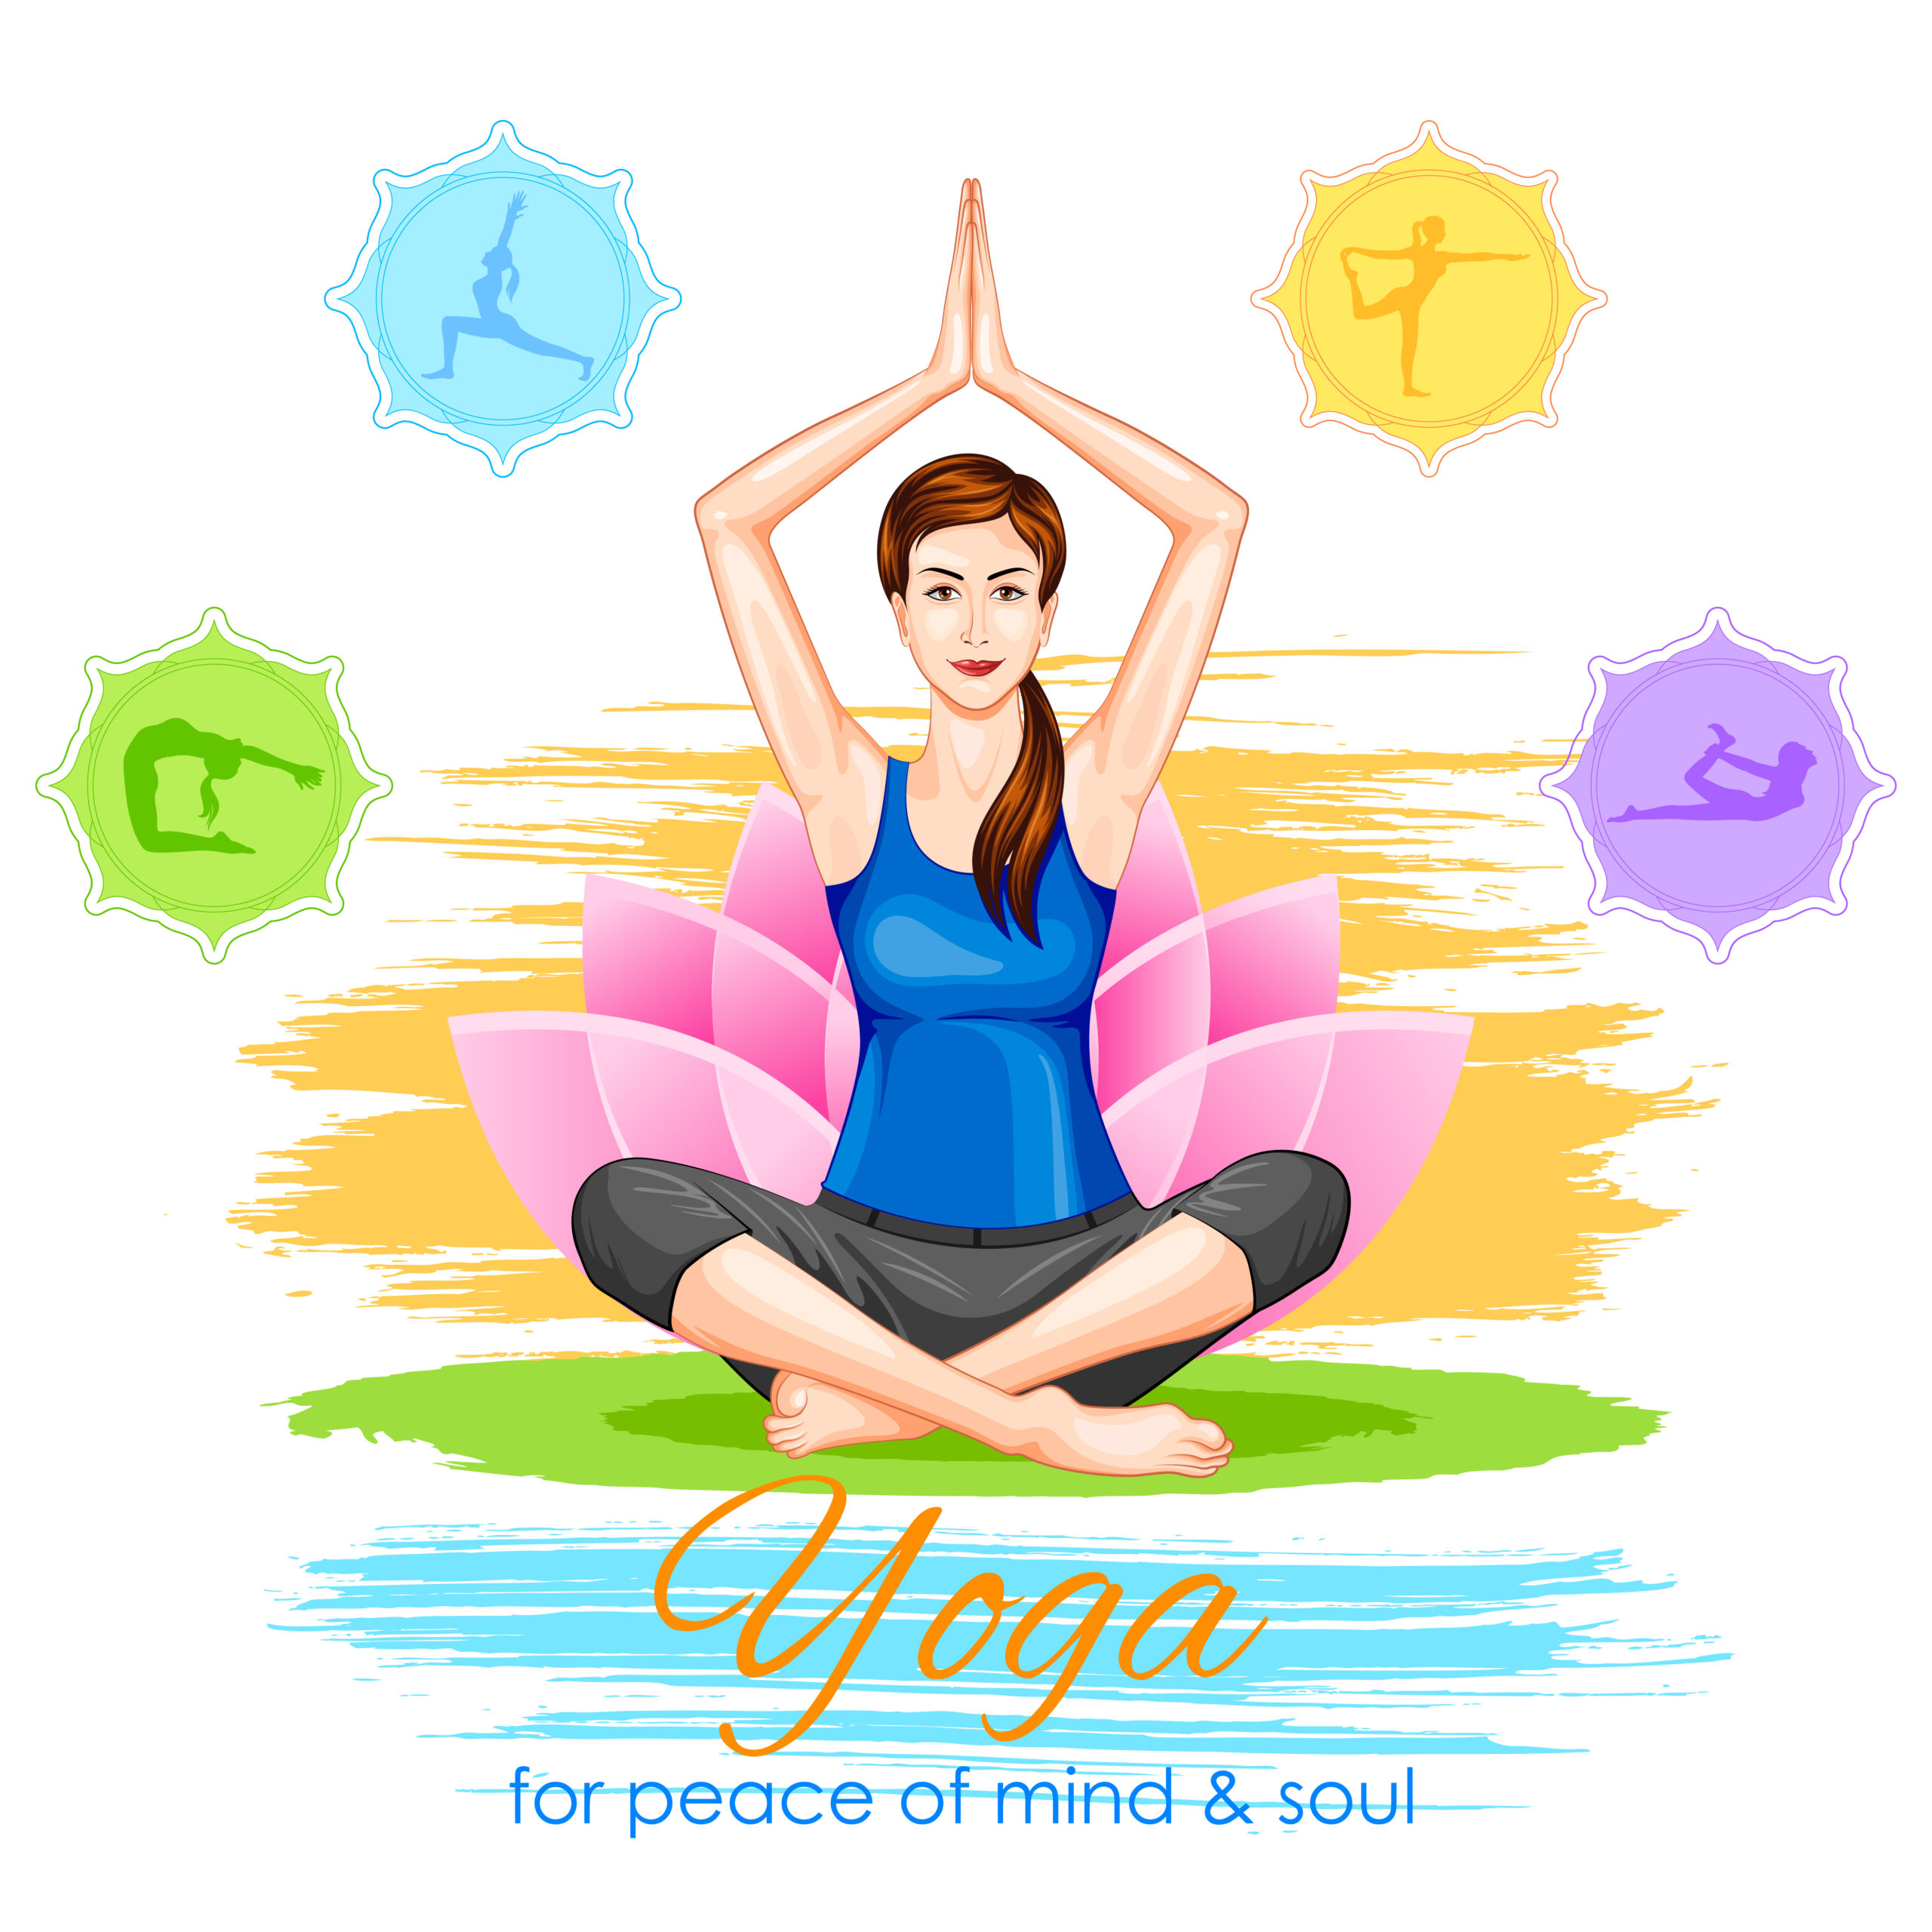 Yoga For Life - Yoga for Life, Health, Wellness, Education